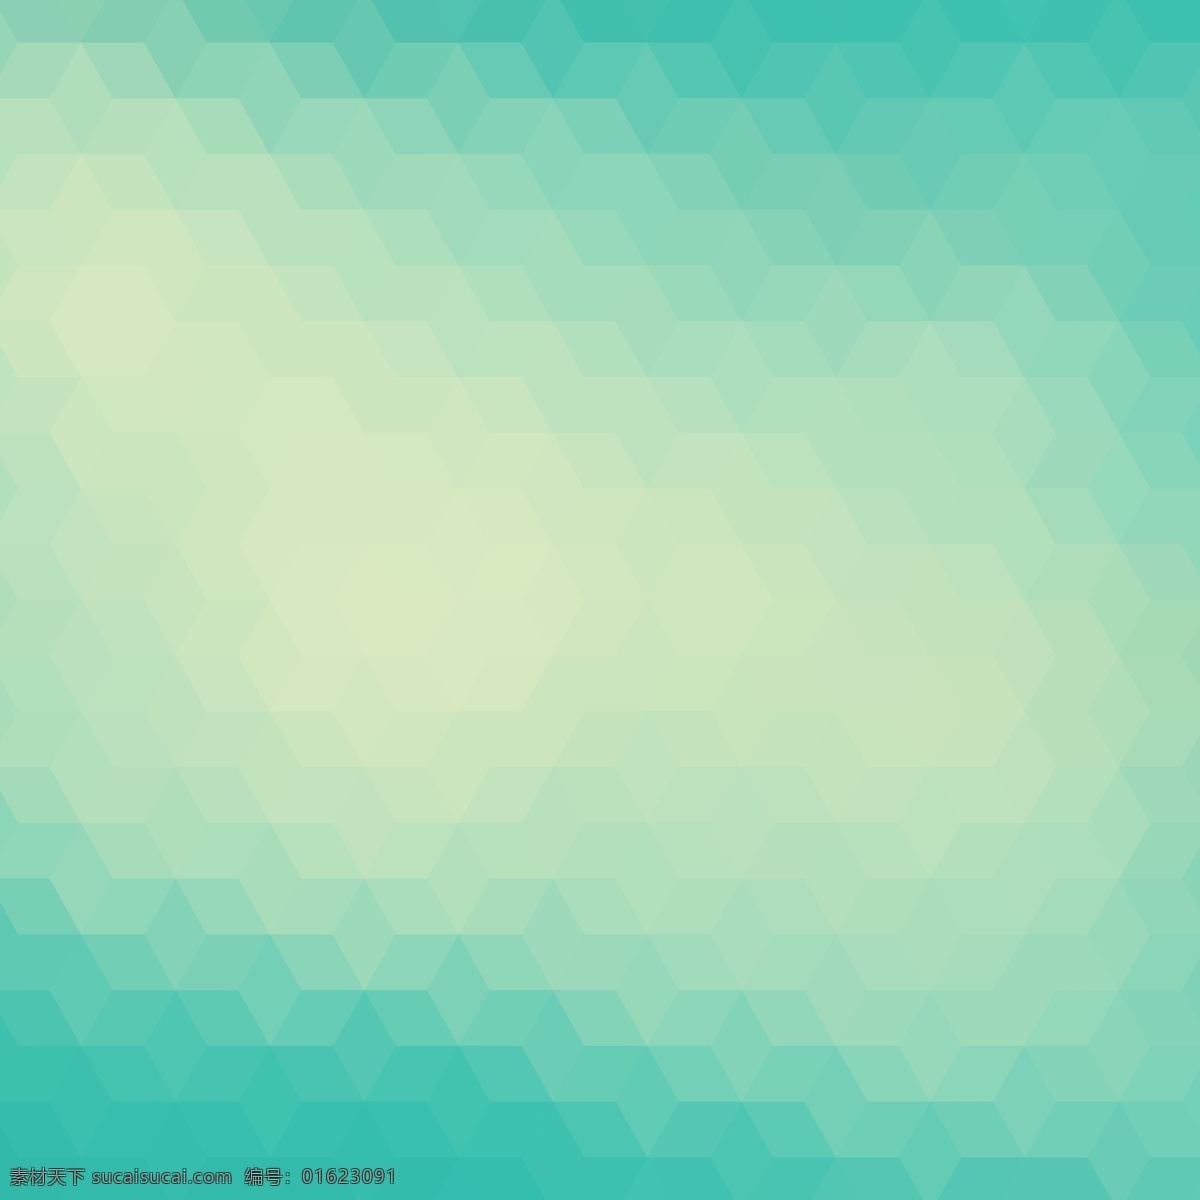 绿色 调 多边形 背景 抽象 几何 三角 菱形 壁纸 几何背景 背景矢量 三角背景 梯度 作用 钻石 渐变背景 青色 天蓝色